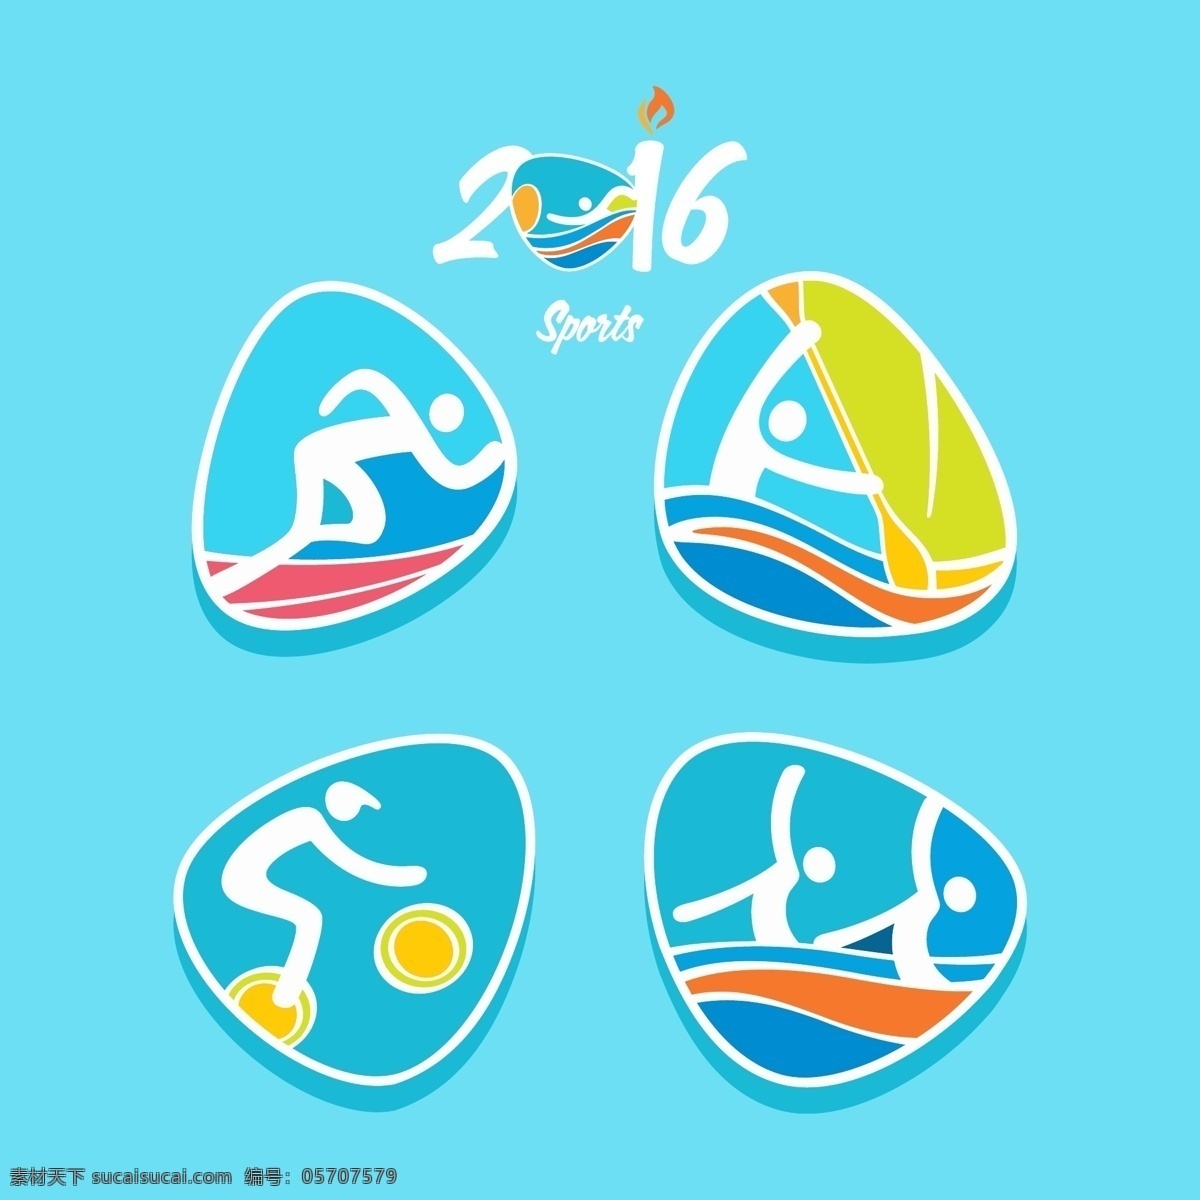 运动项目图标 运动会 项目 游泳 自行车 图标 商标 青色 天蓝色